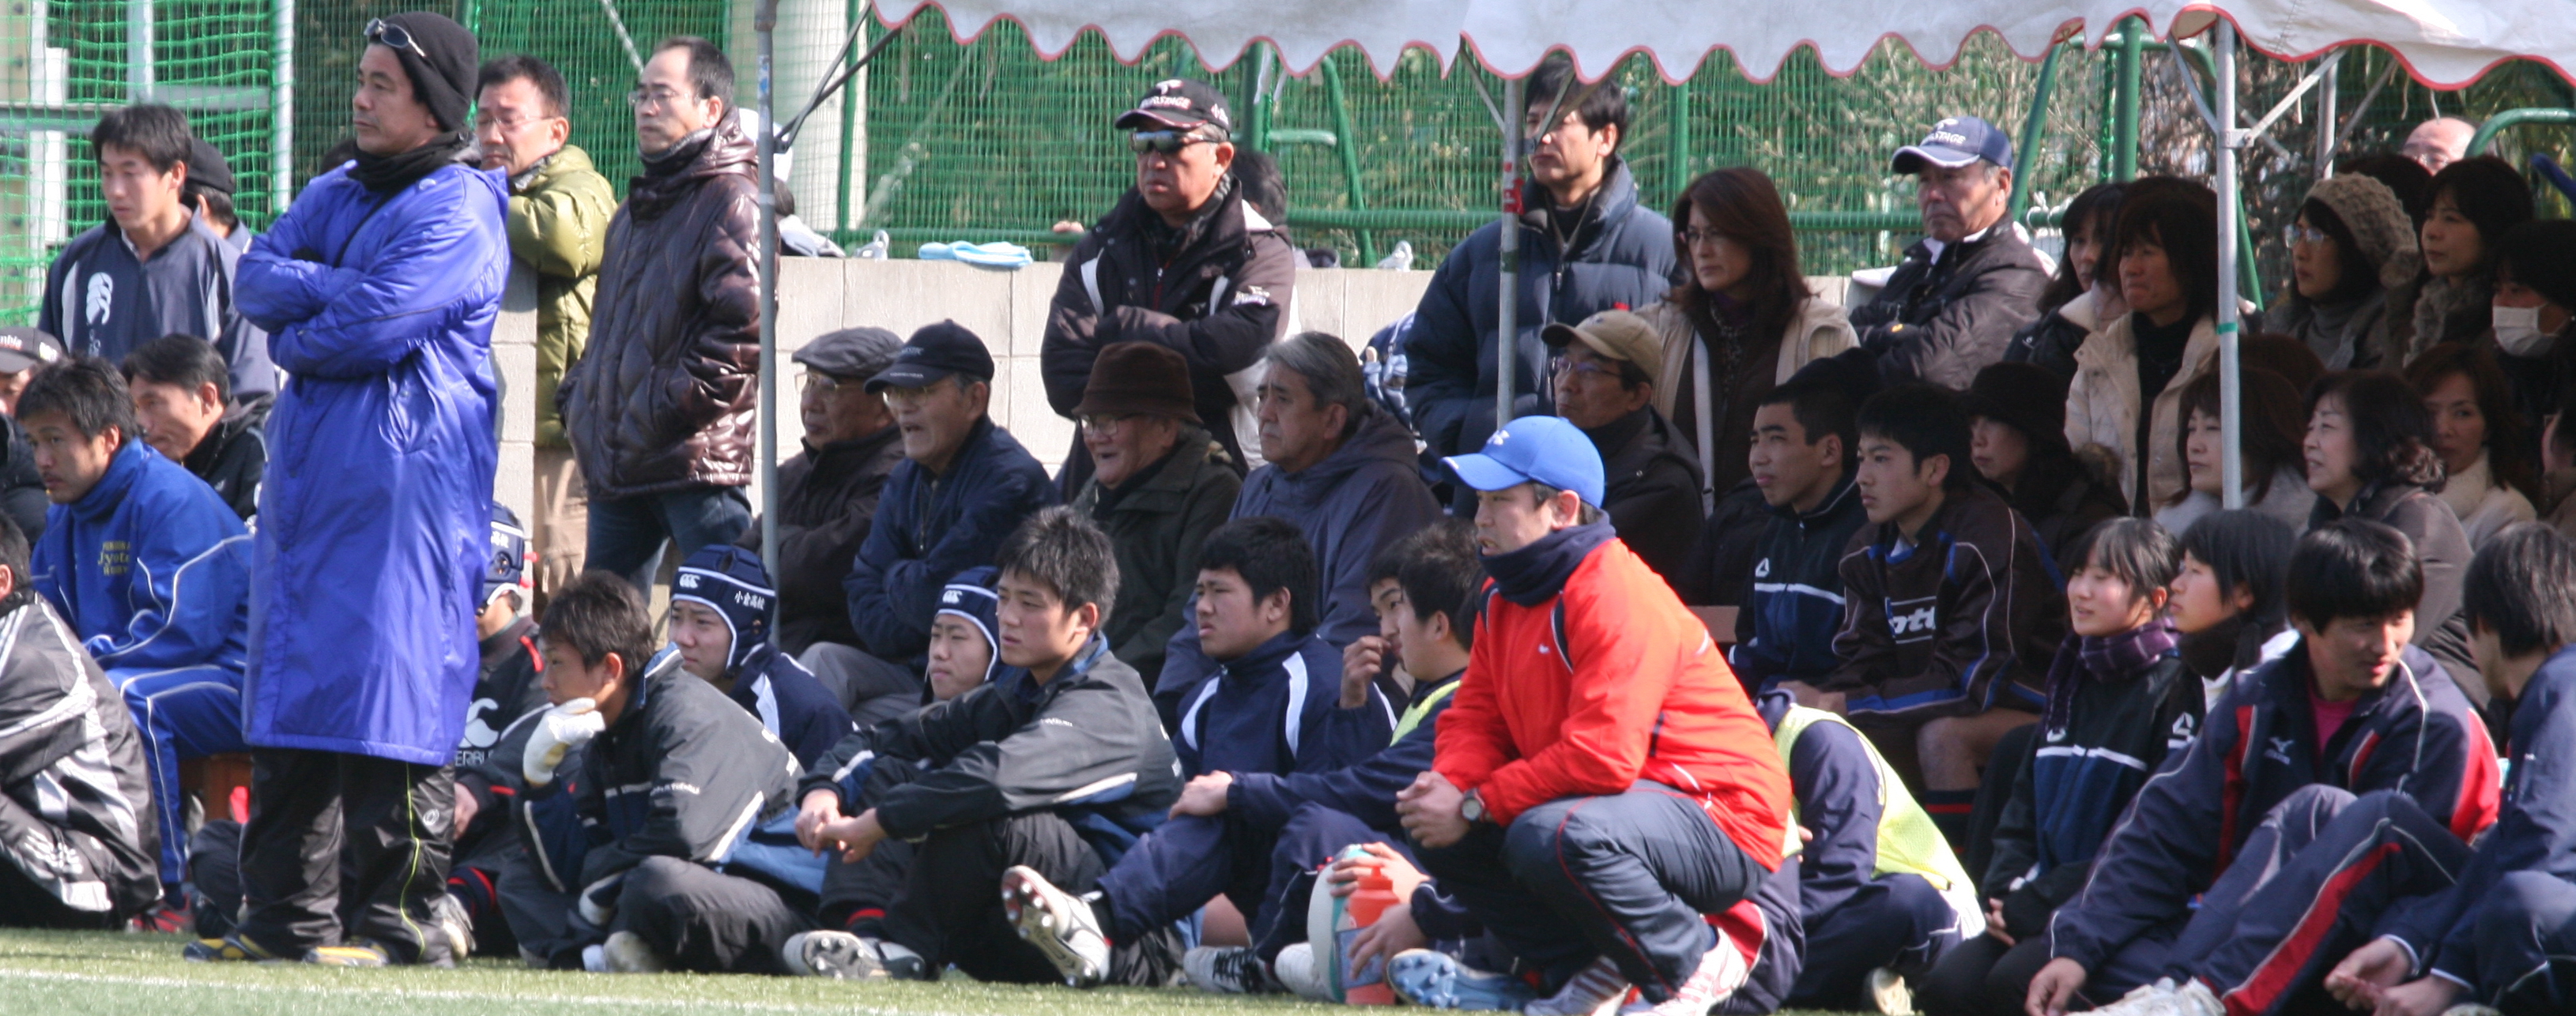 http://kokura-rugby.sakura.ne.jp/2010.1.24-I.JPG